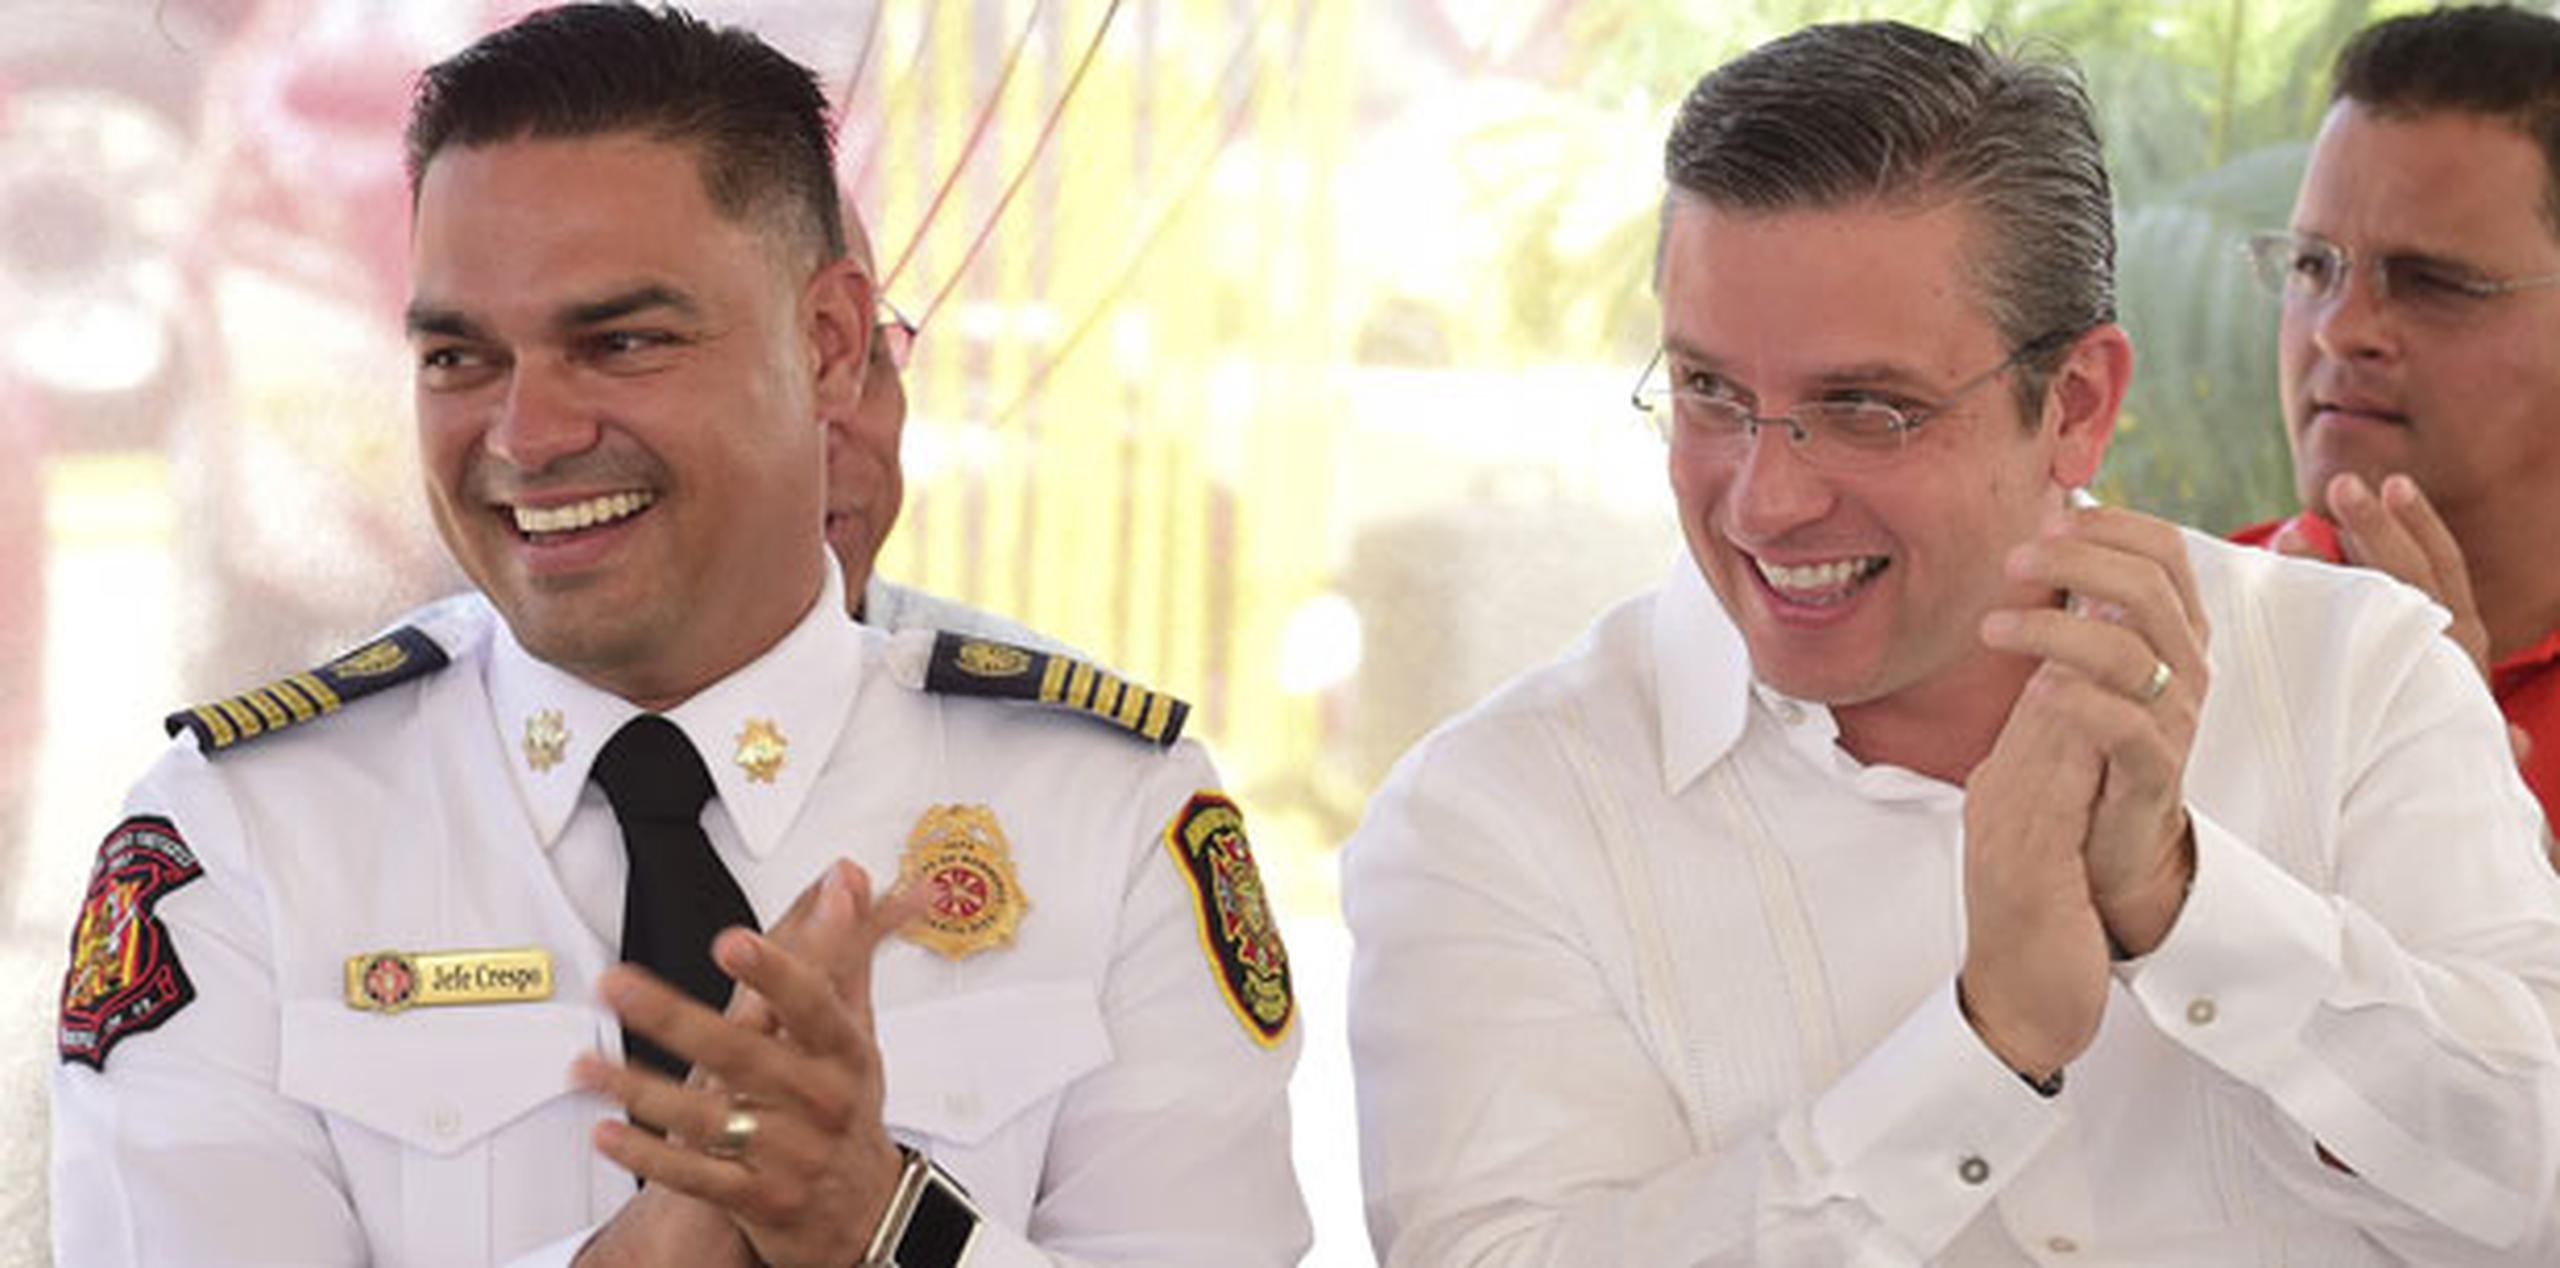 De izquierda a derecha, el jefe del Cuerpo de Bomberos de Puerto Rico, Ángel Crespo y el gobernador, Alejandro García Padilla. (Archivo)